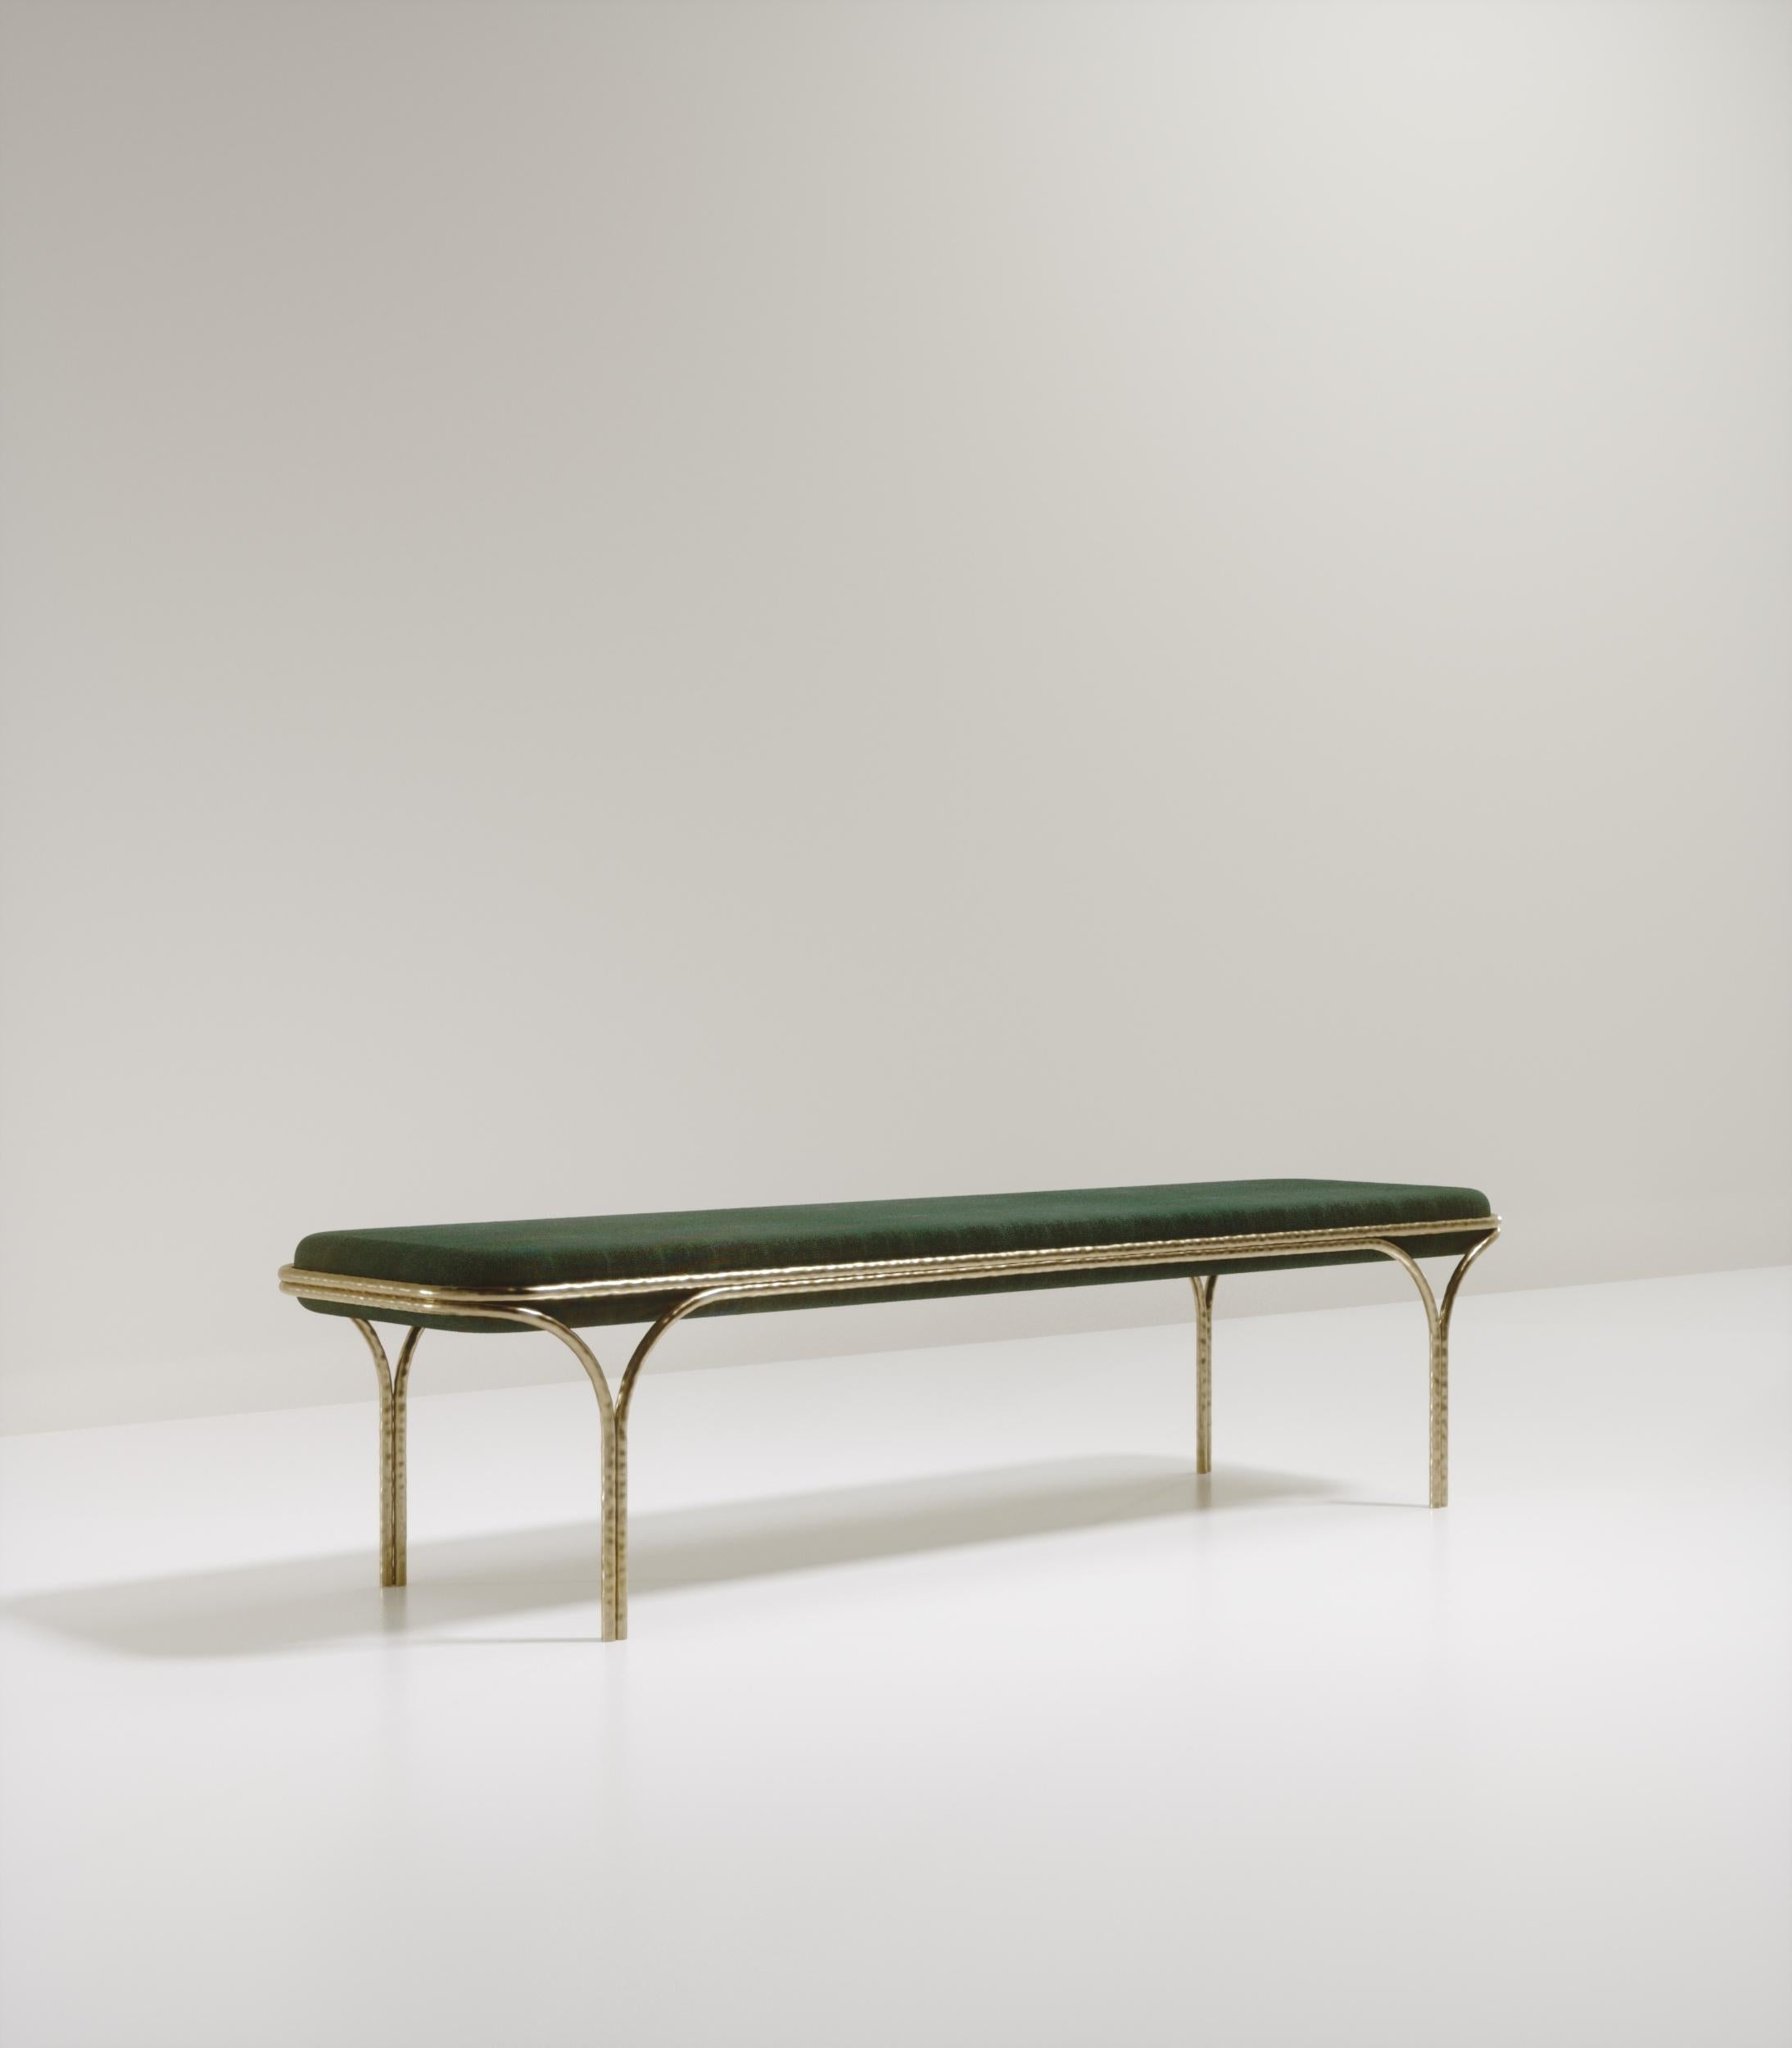 Le banc Arianne de R&Y Augousti est une pièce élégante pour tout espace. Le siège en galuchat vert, aux bords incurvés, repose sur un cadre organique en bronze-patine. Le cadre et les pieds complexes ont un effet de 